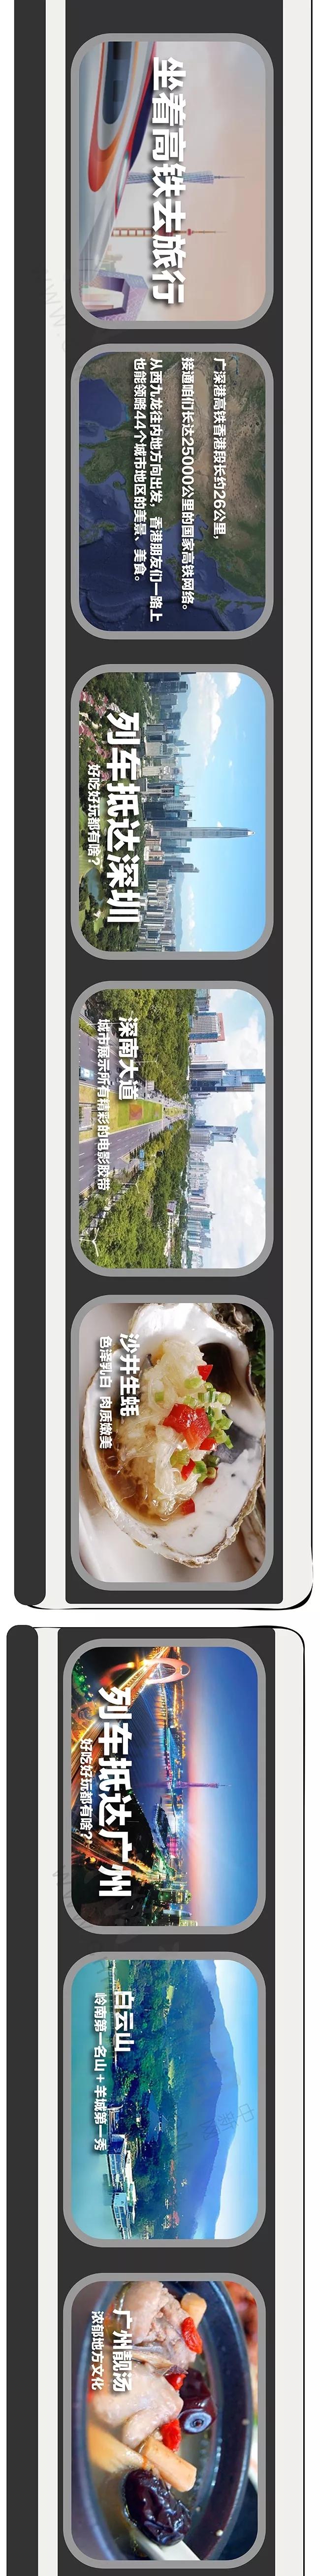 广深港高铁即将发车！快上车感受一路风景和美食！